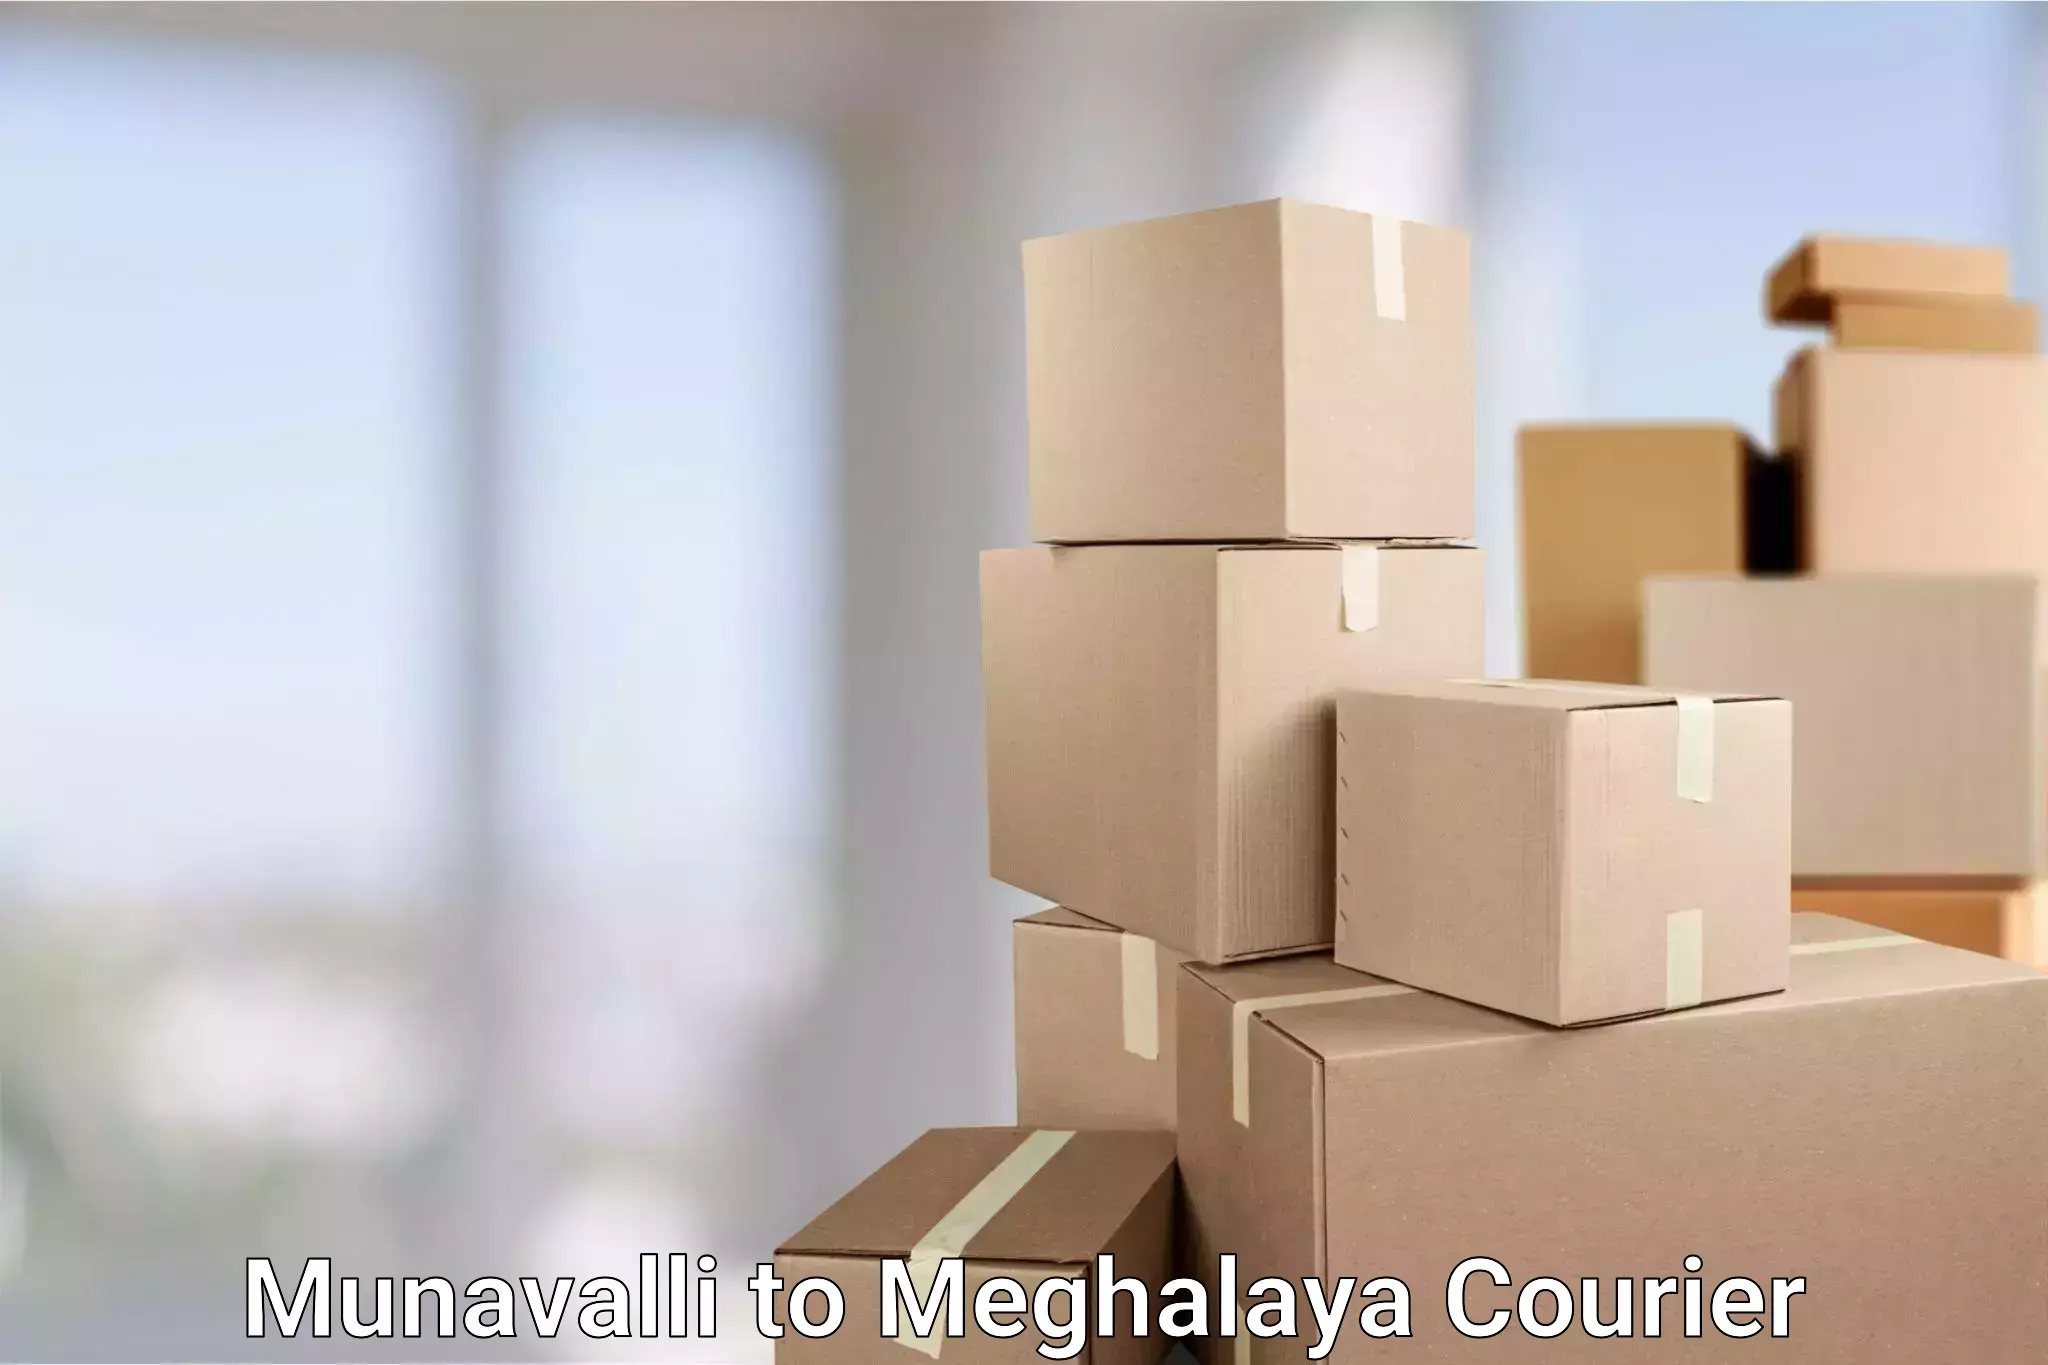 Urban courier service Munavalli to Meghalaya